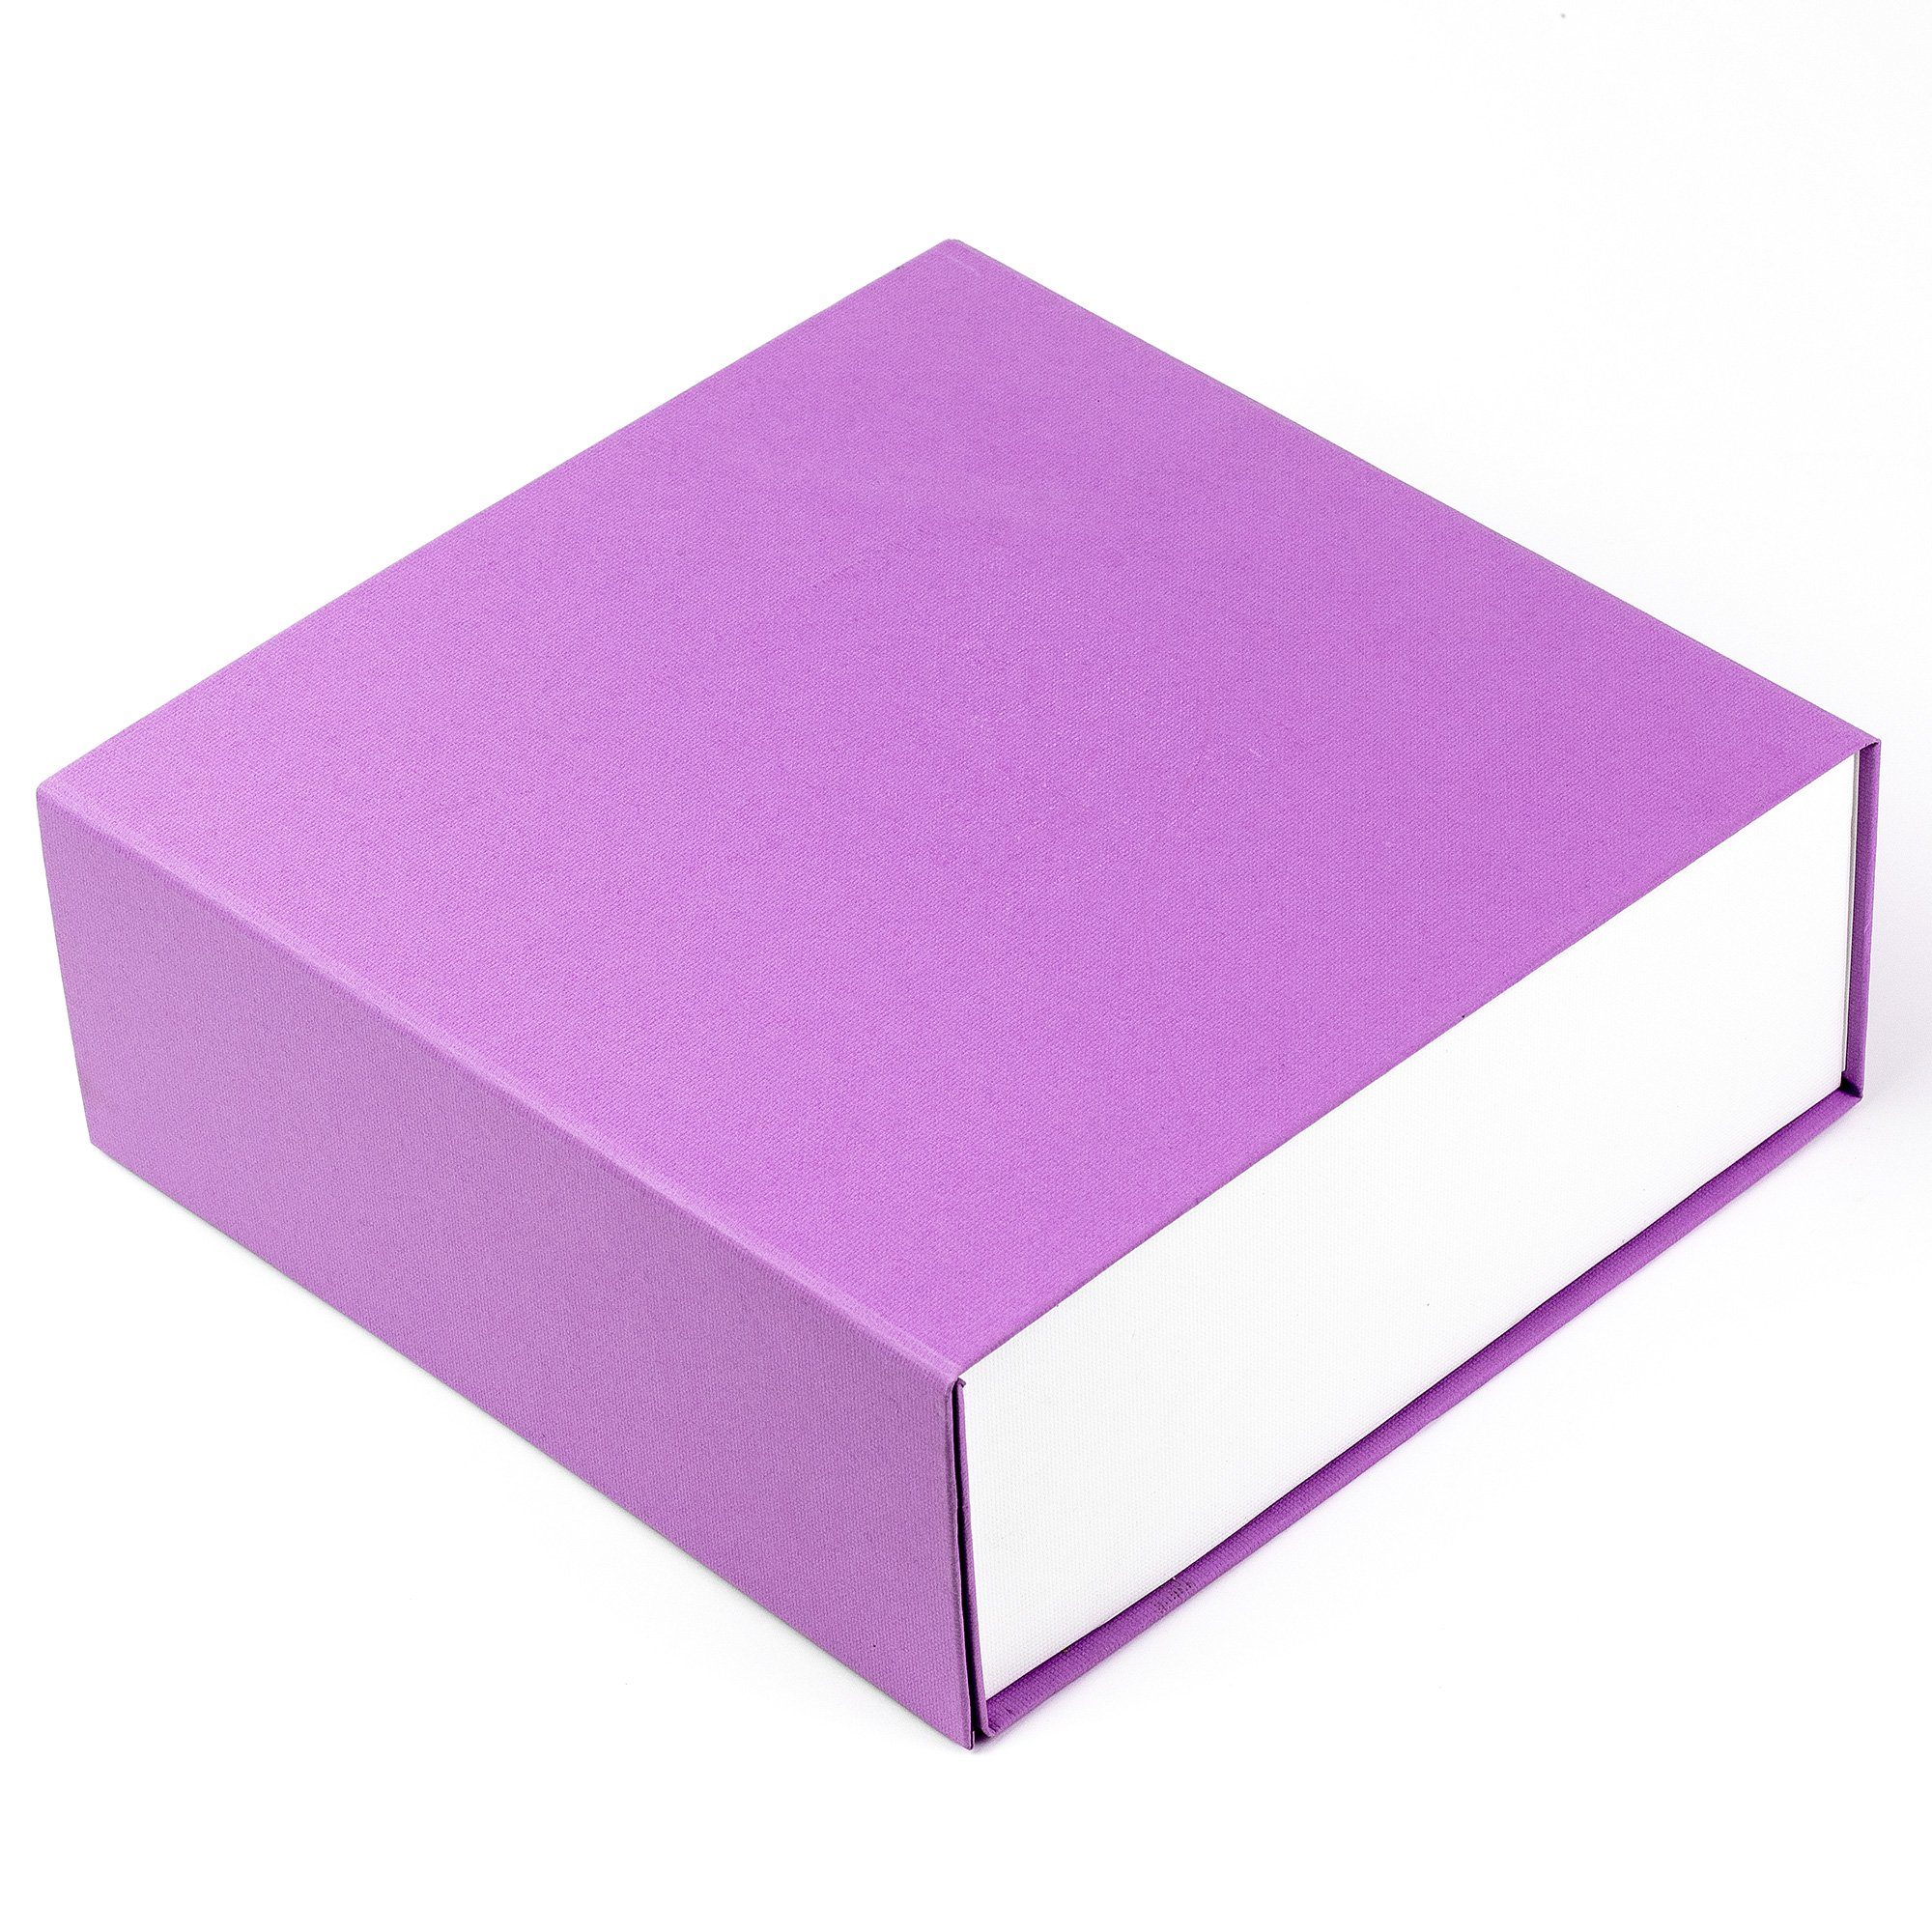 AdelDream Aufbewahrungsbox für Geschenkbox und Geschenkbox Magnet mit Geburtstagsgeschenk Hochzeiten, Violett Babybrautjungfer Deckel und Rechteck